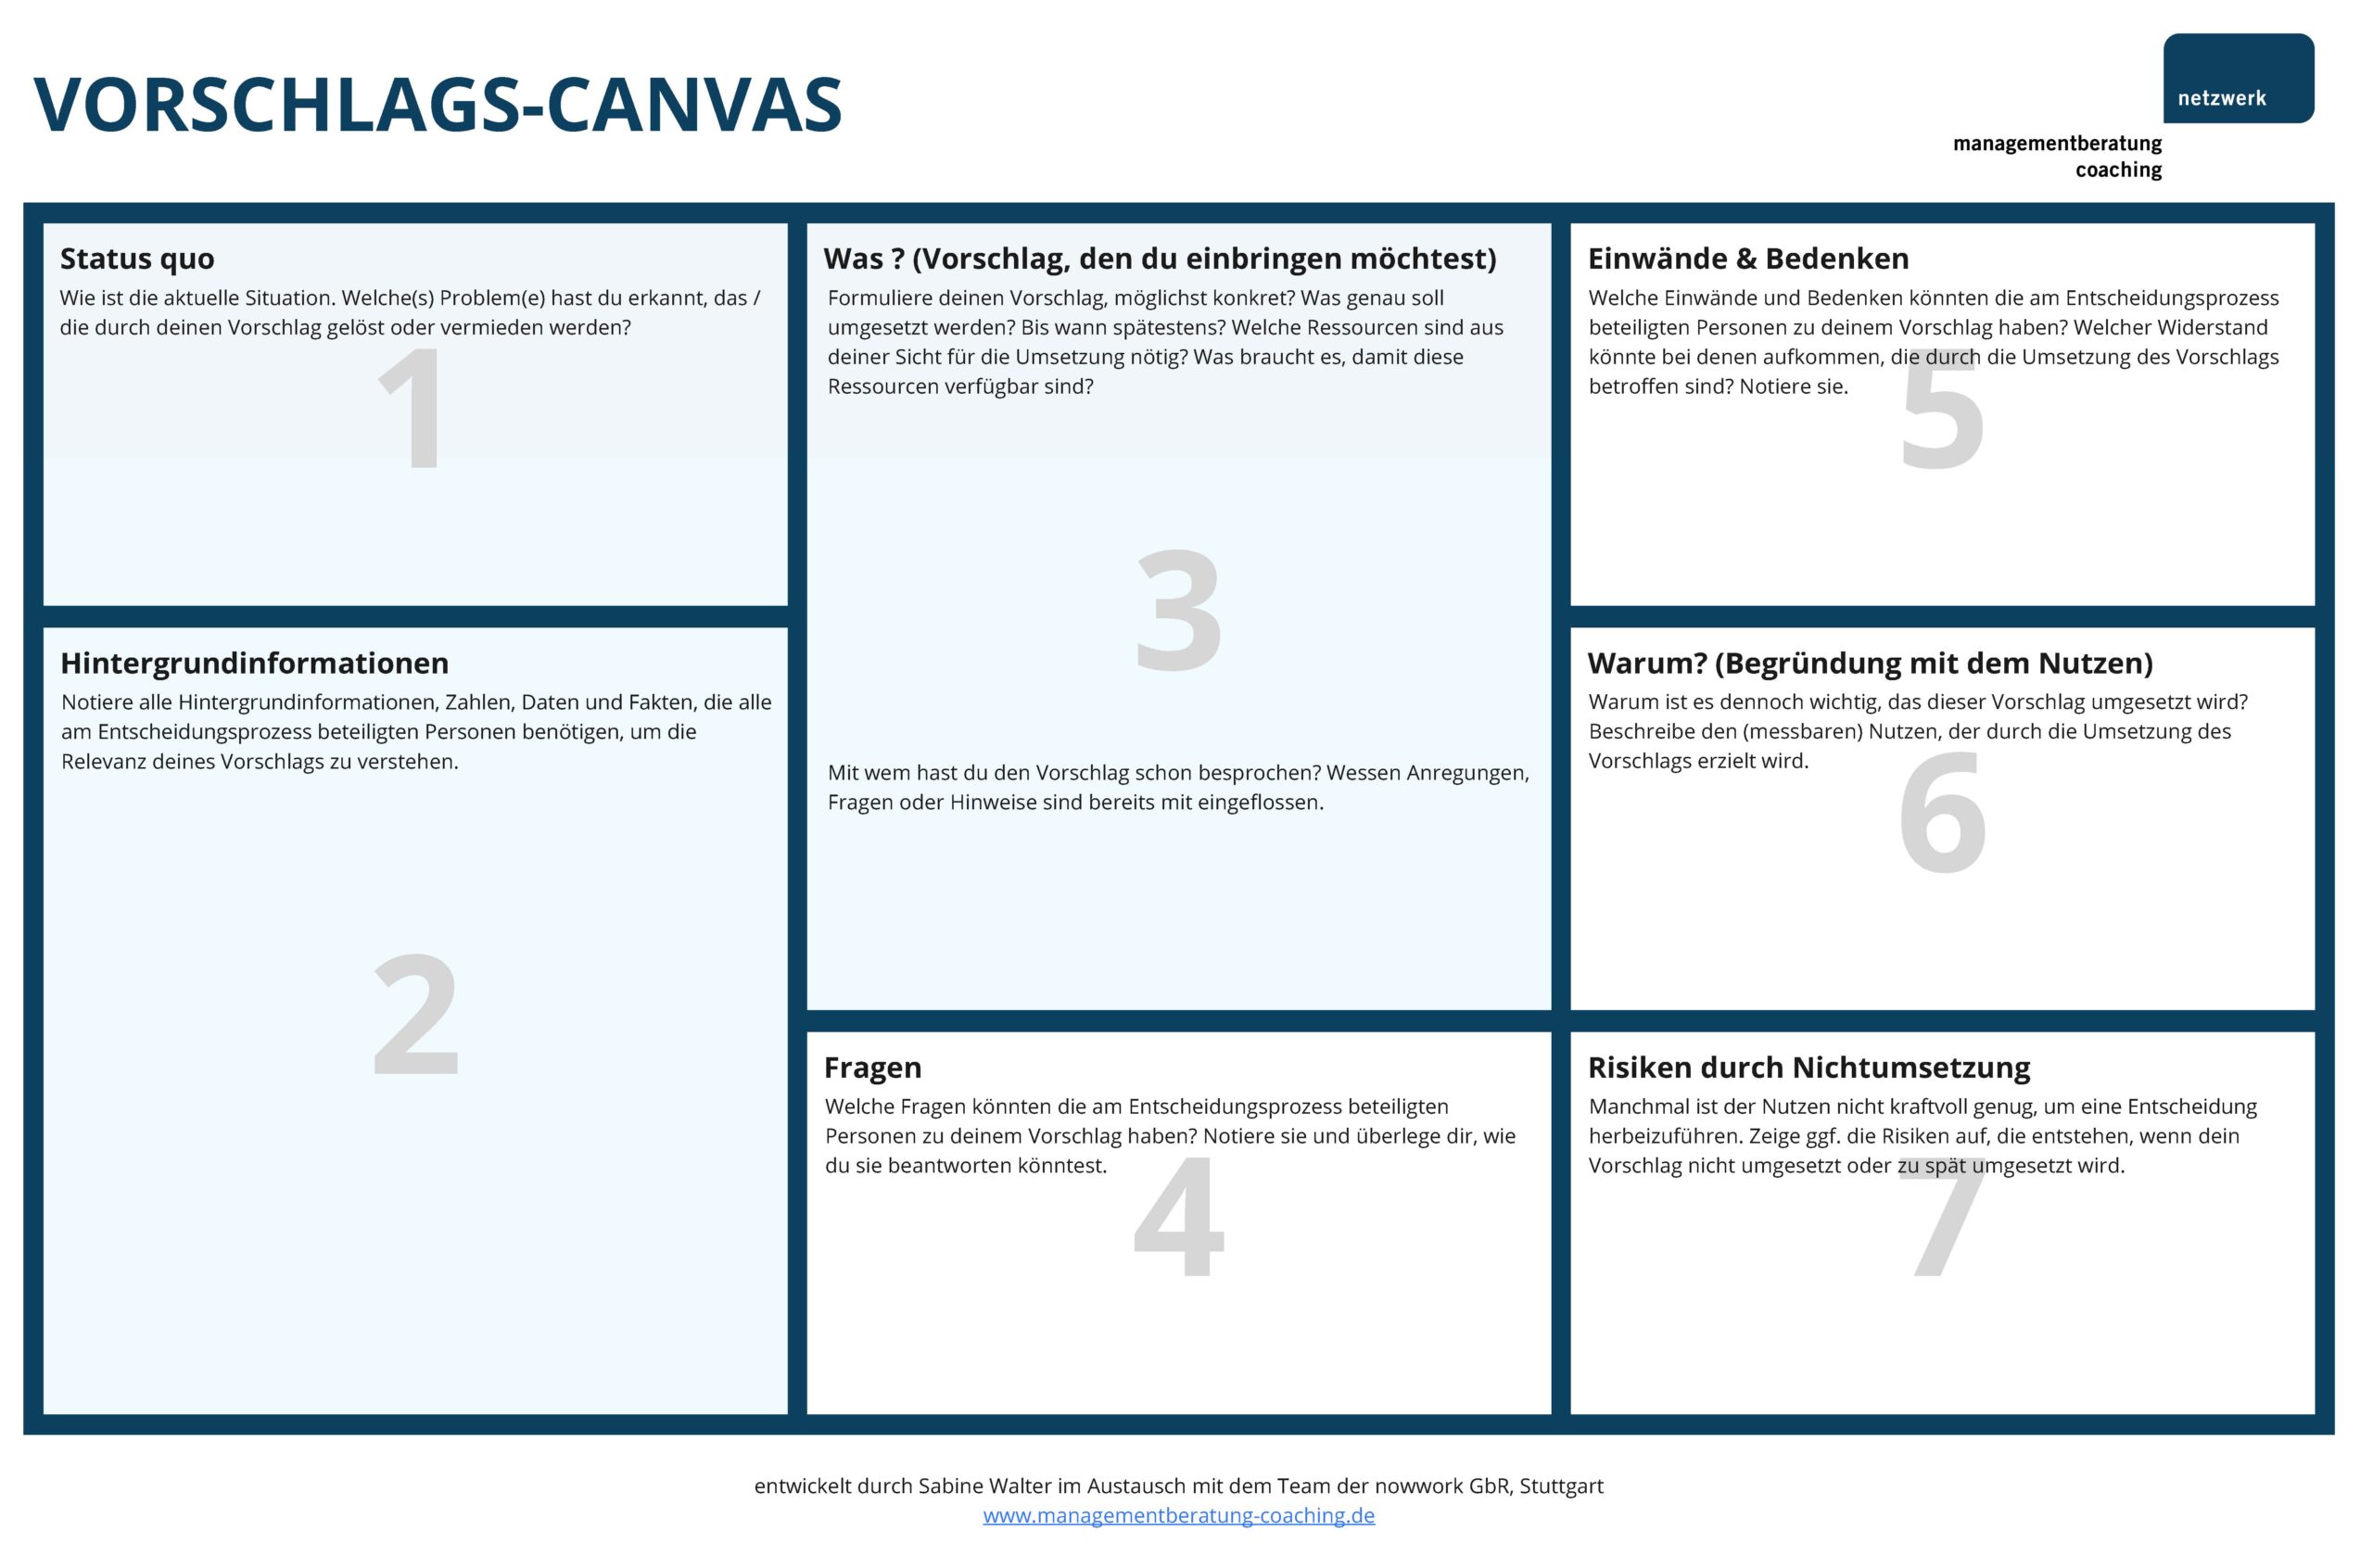 CANVAS-Struktur, um Vorschläge zur Entscheidung zu bringen